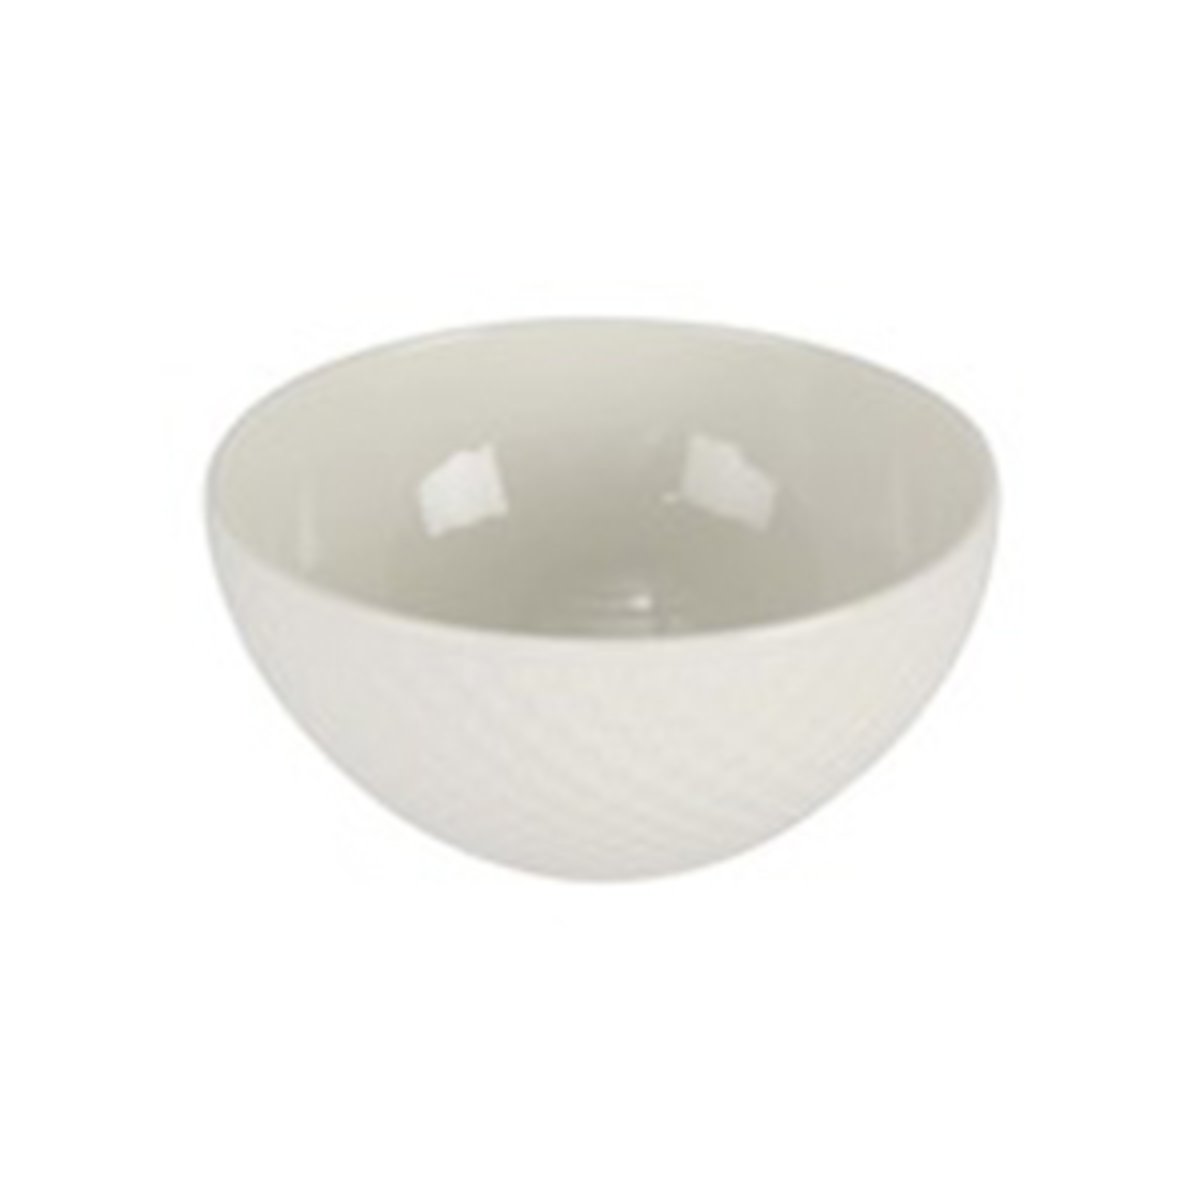 Qualitier Small Bowl White 12cm